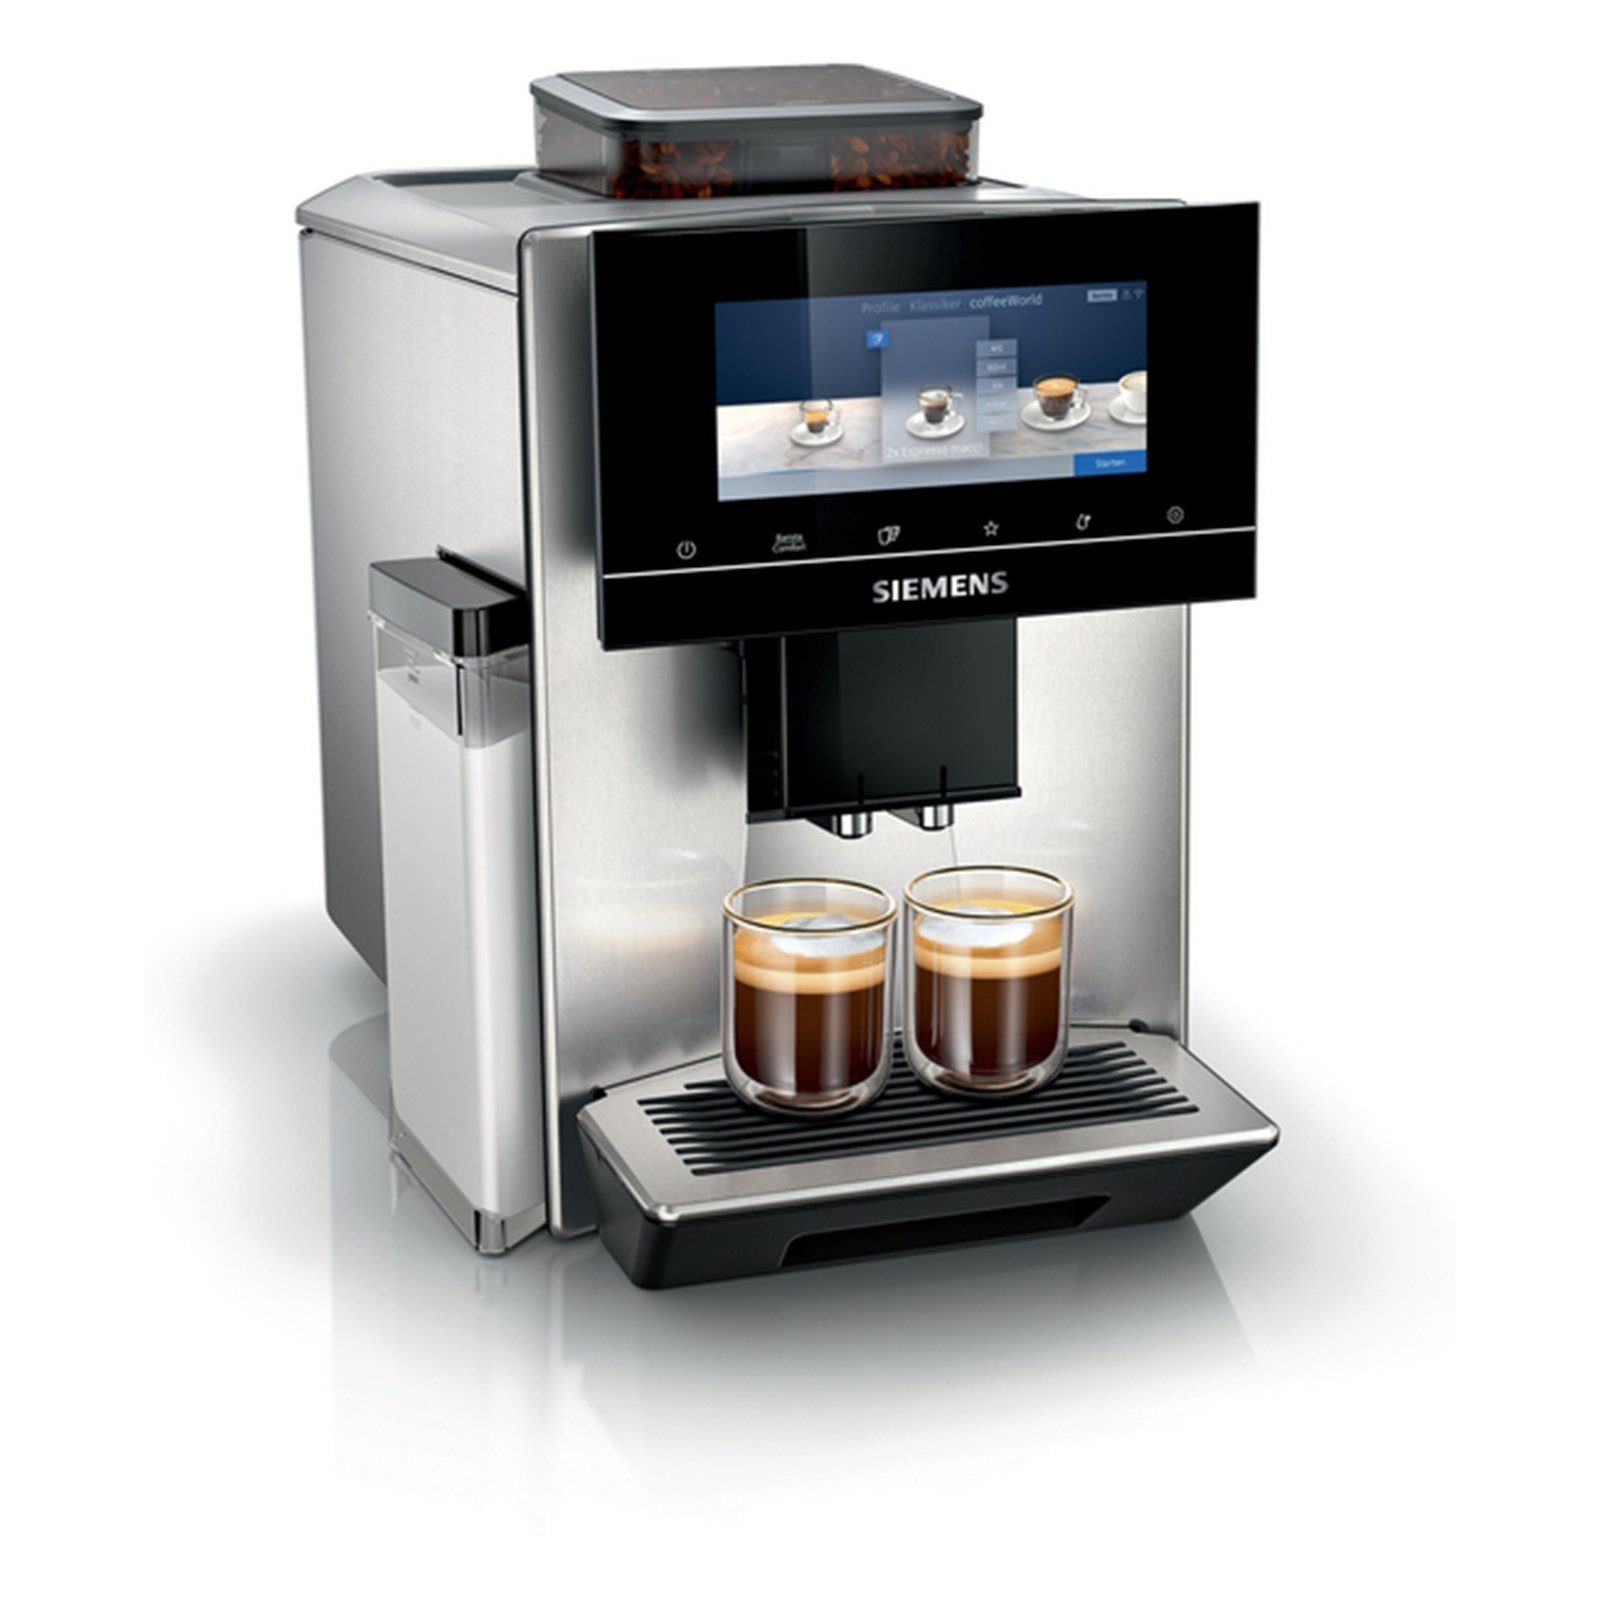 SIEMENS individuelle und Kaffeevollautomat, präzise Kontrolle